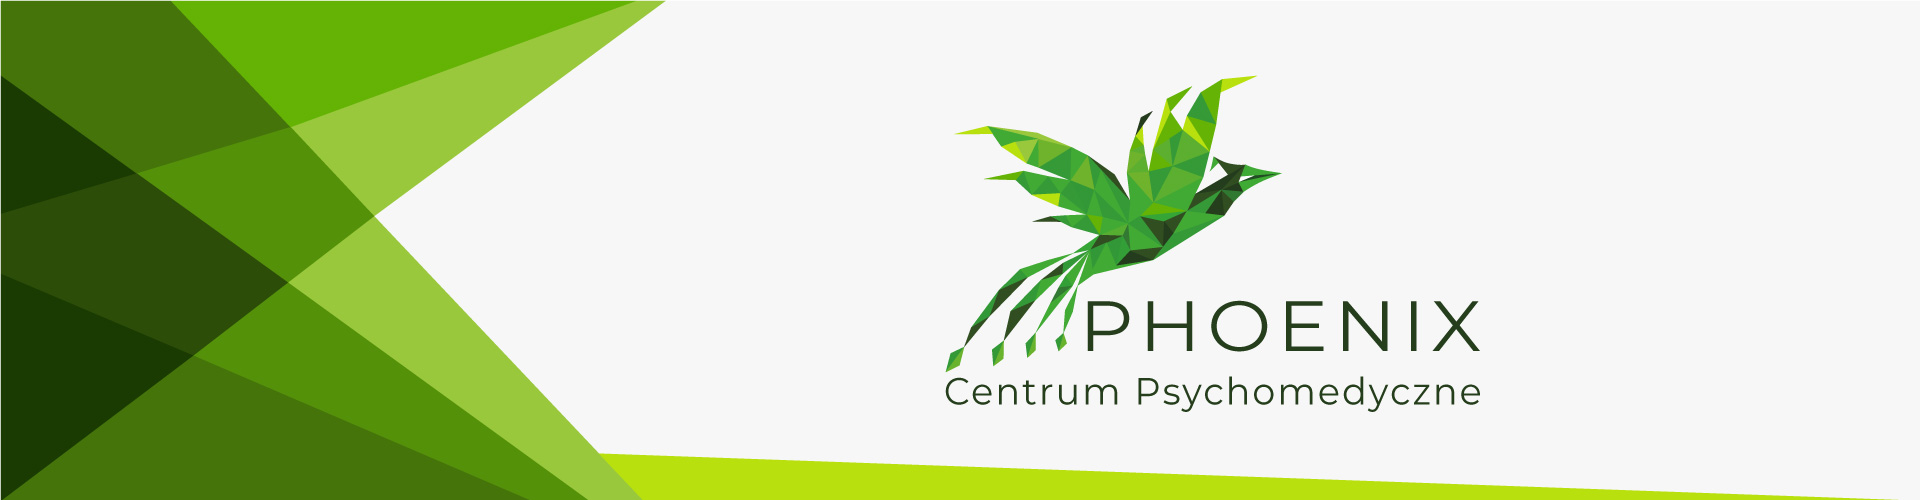 PHOENIX Centrum Psychomedyczne - kontakt